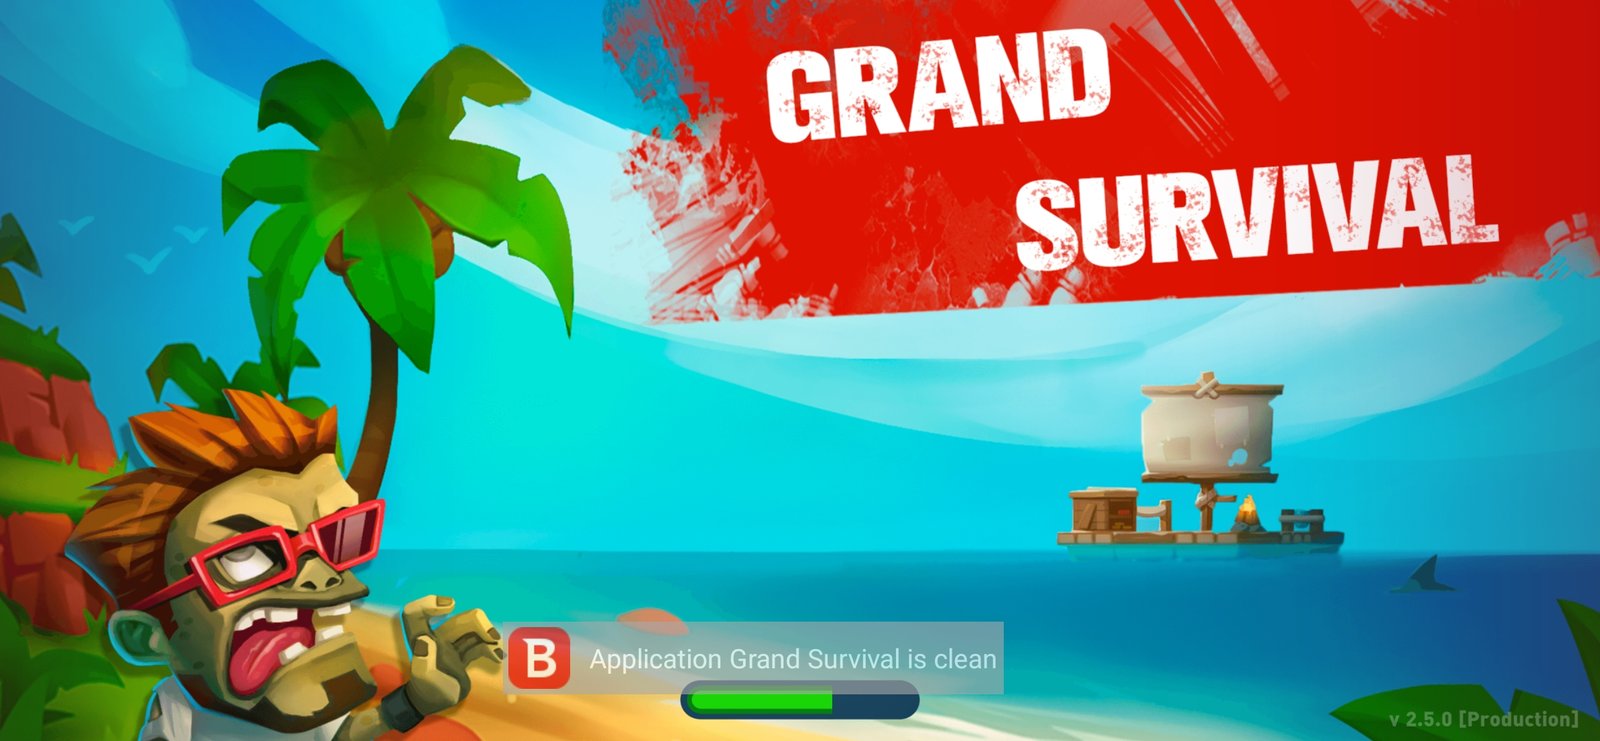 海洋岛屿生存(Grand Survival)免广告领奖励